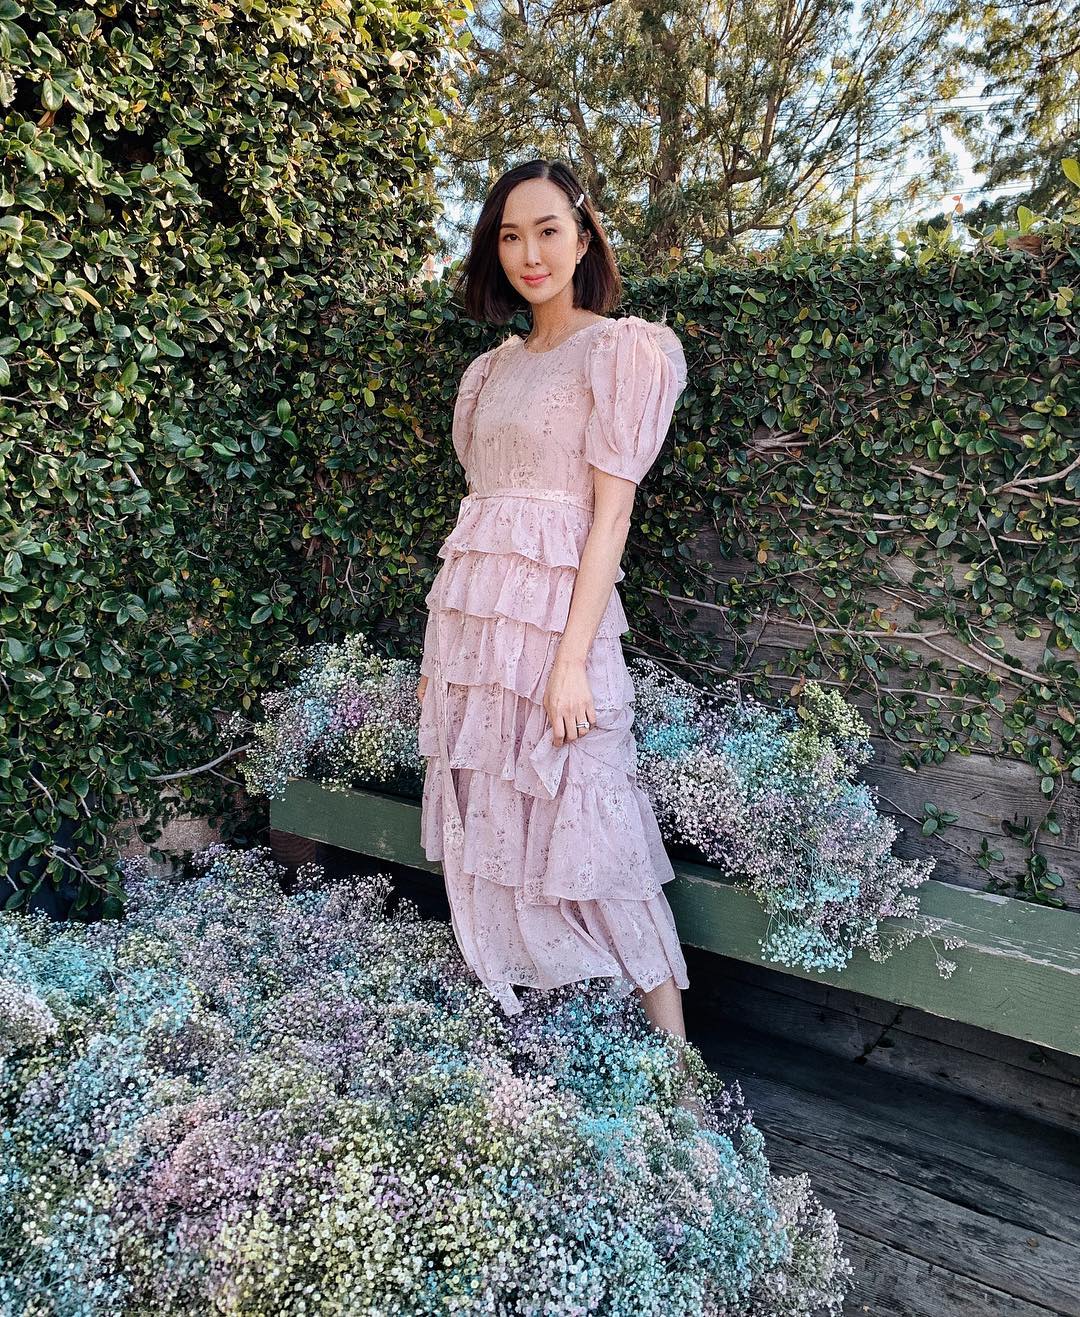 Fashionista Chriselle Lim diện đầm in hoa xếp tầng màu pastel trang nhã